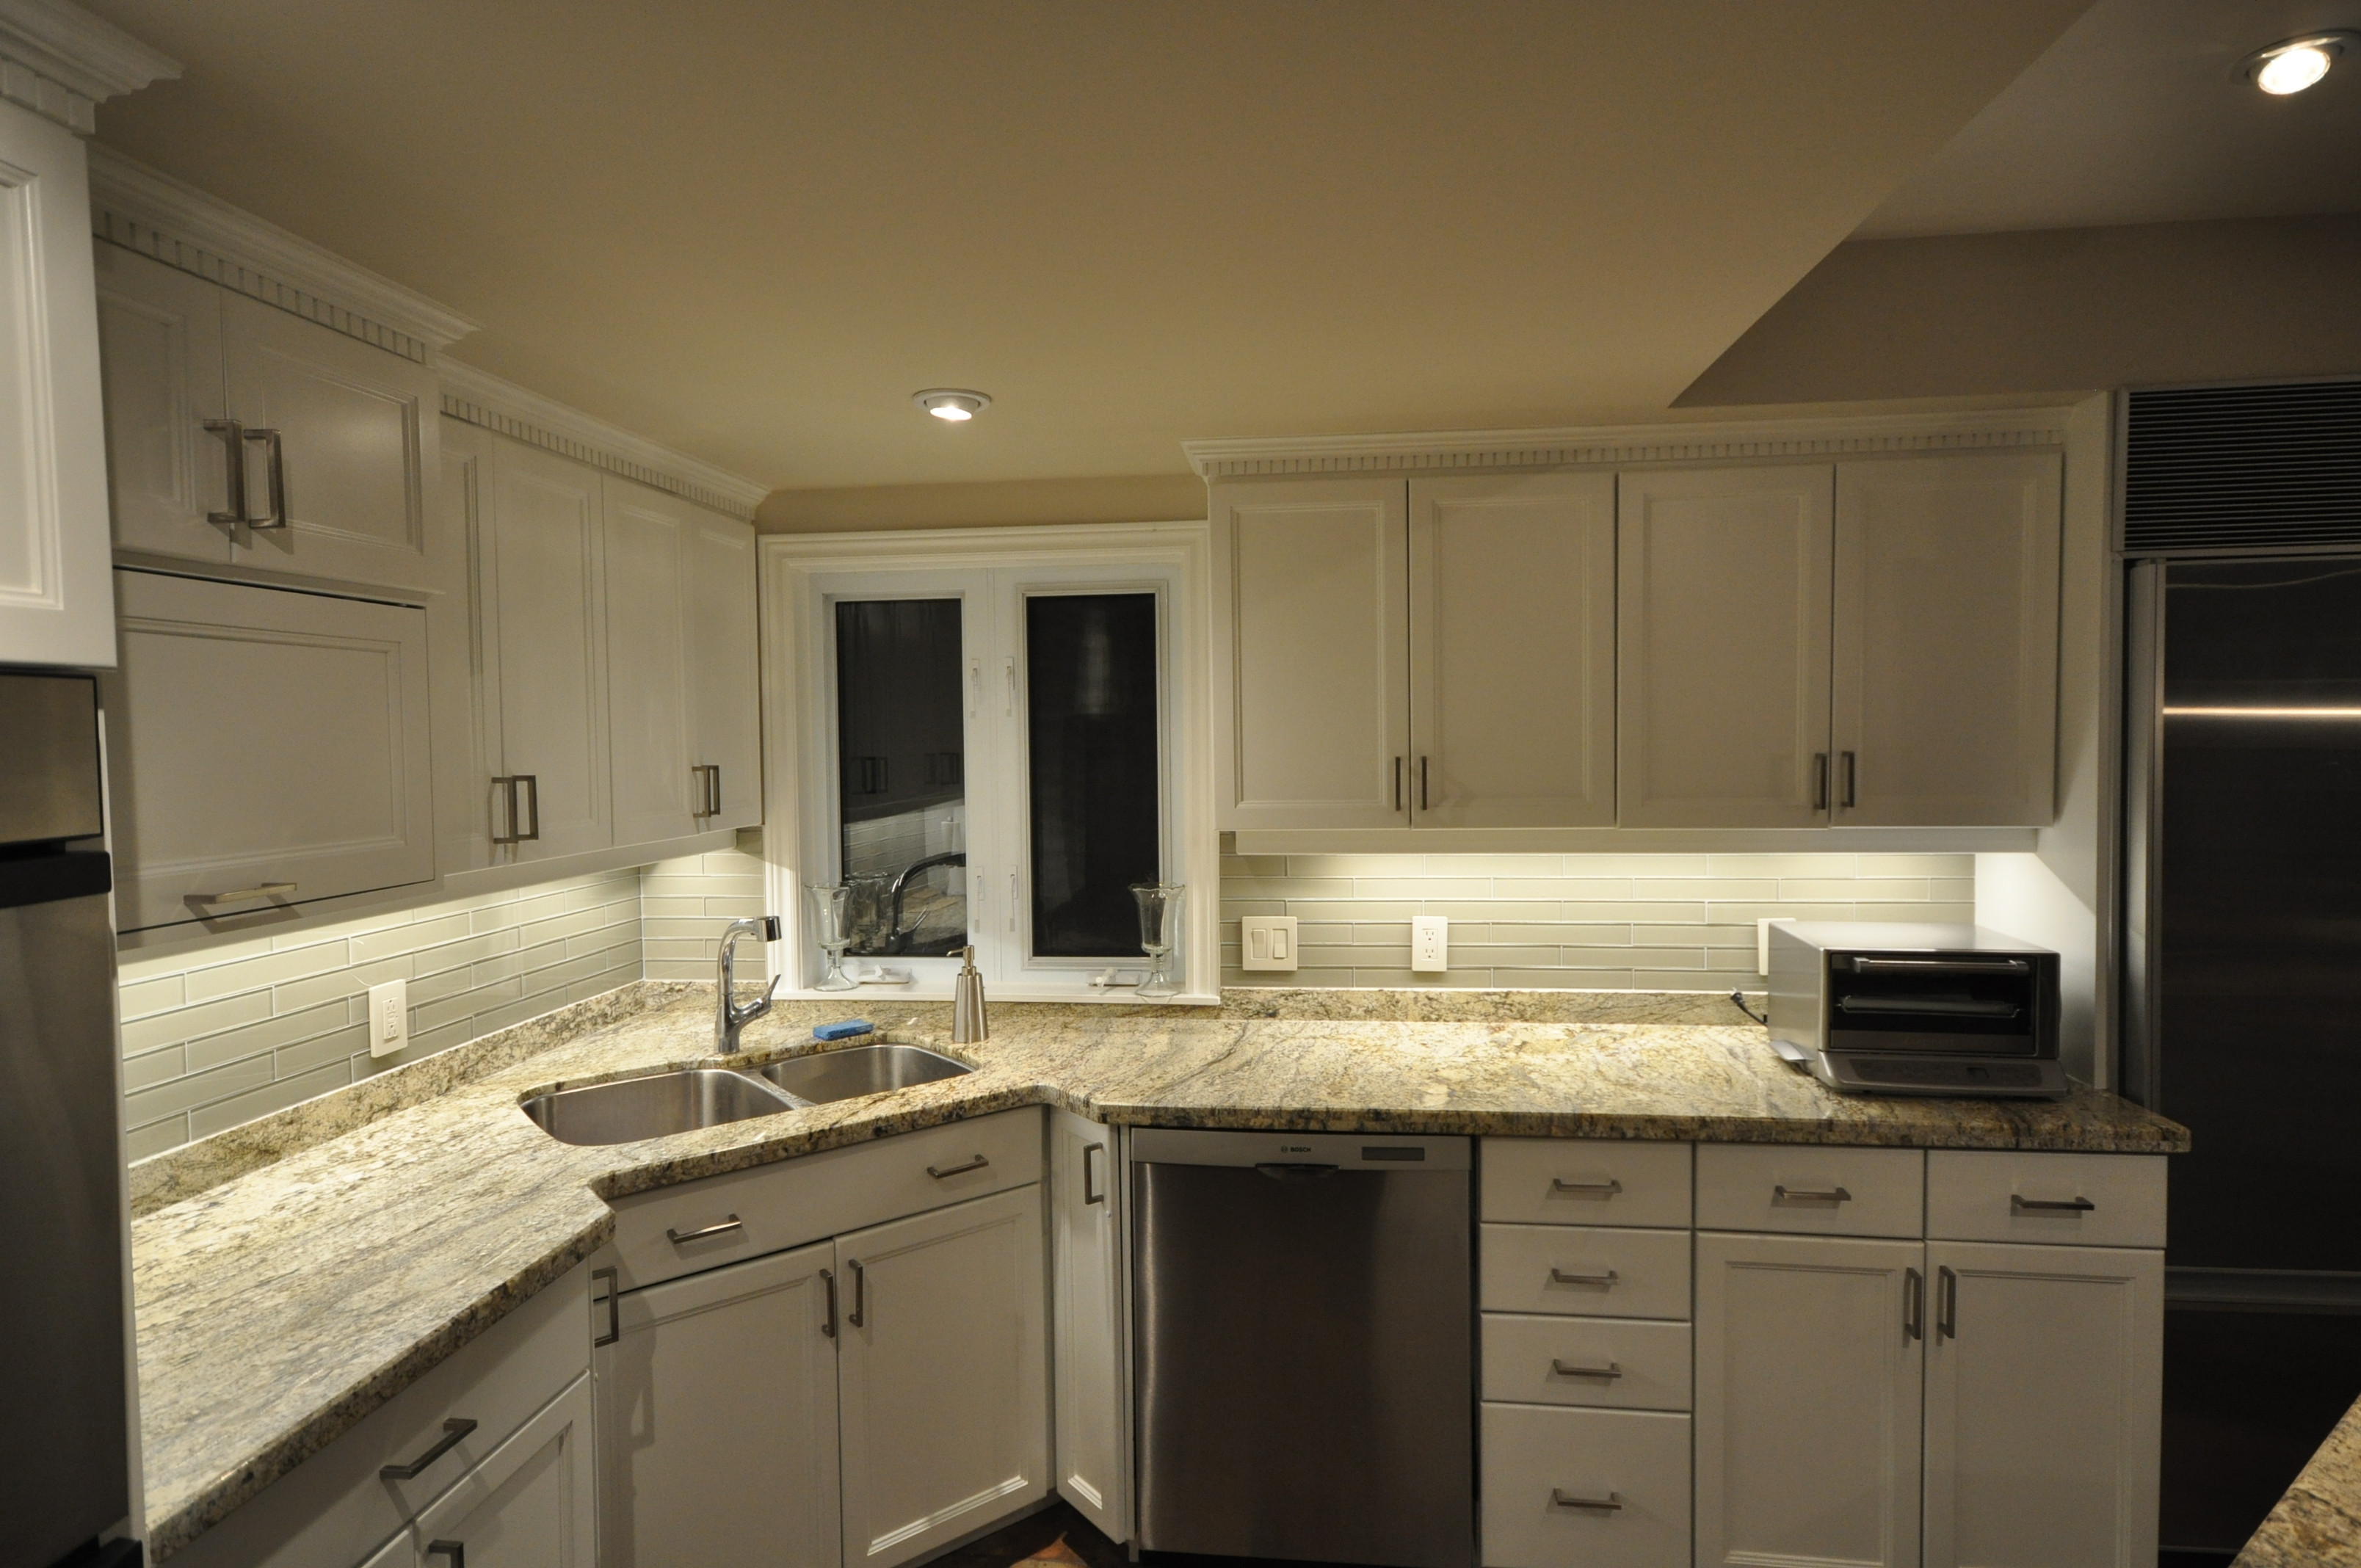 Best ideas about Kitchen Under Cabinet Lighting
. Save or Pin Under cabinet lighting options for your kitchen Now.